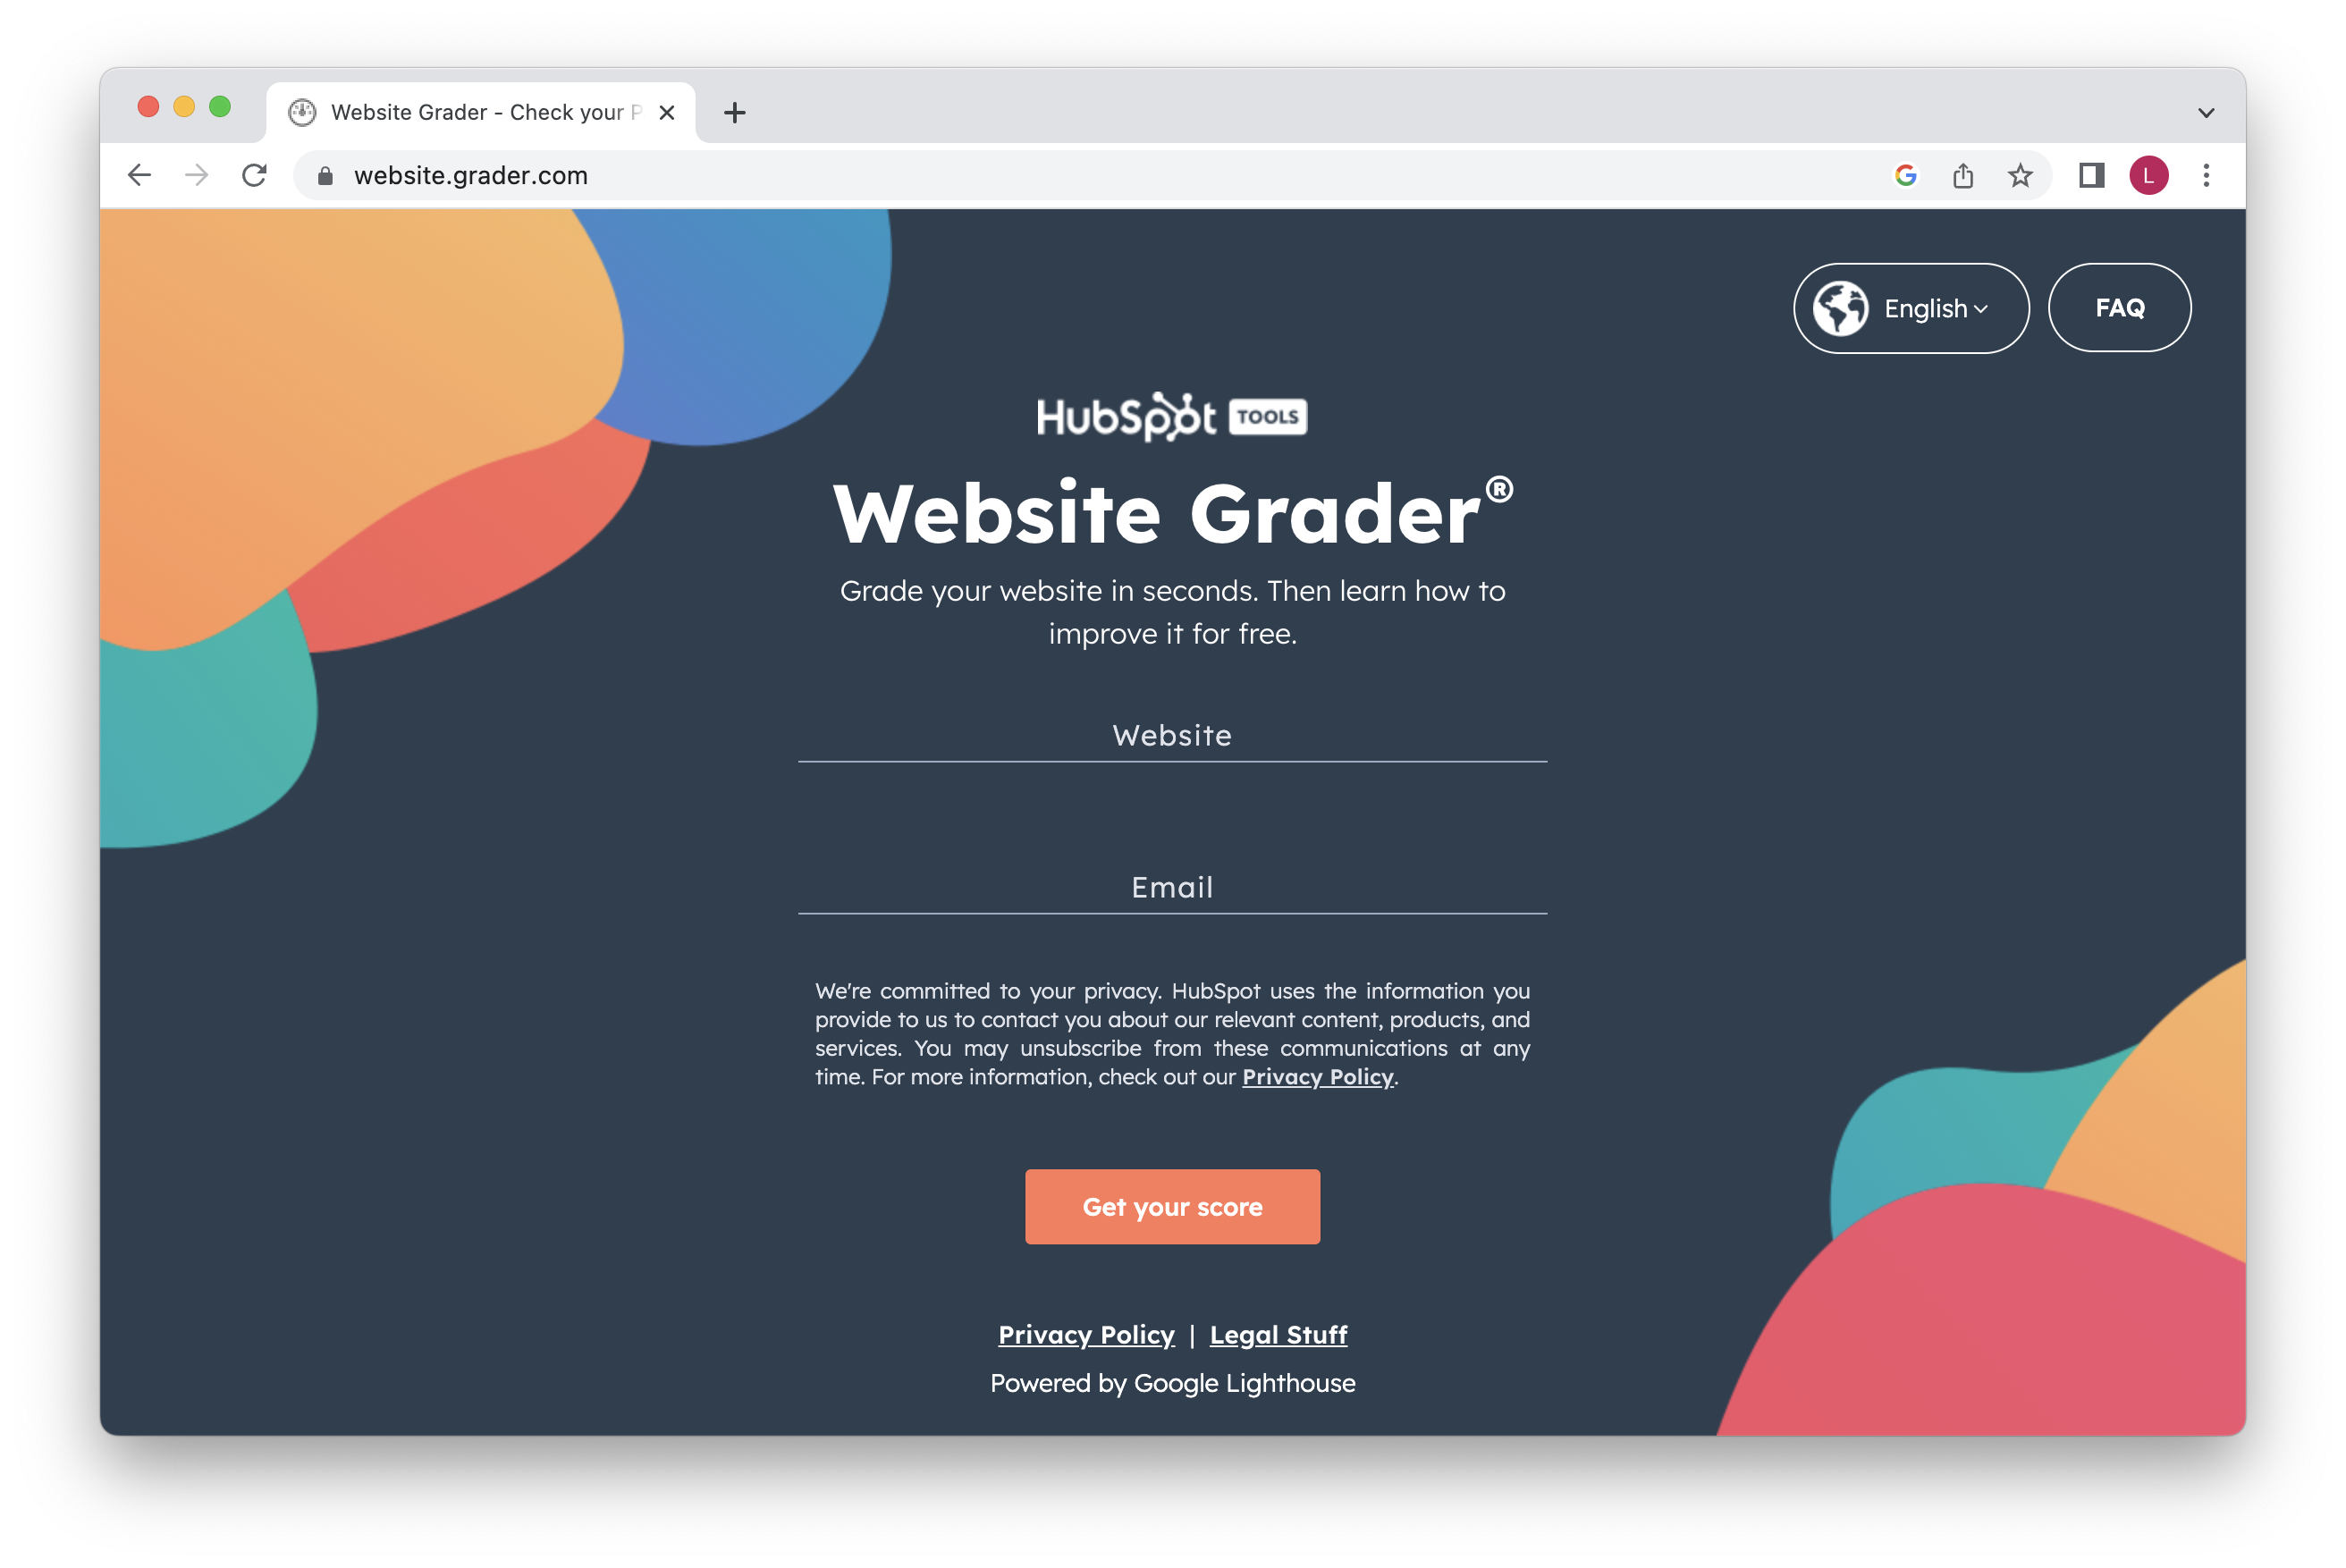 Using HubSpot's Website Grader Tool